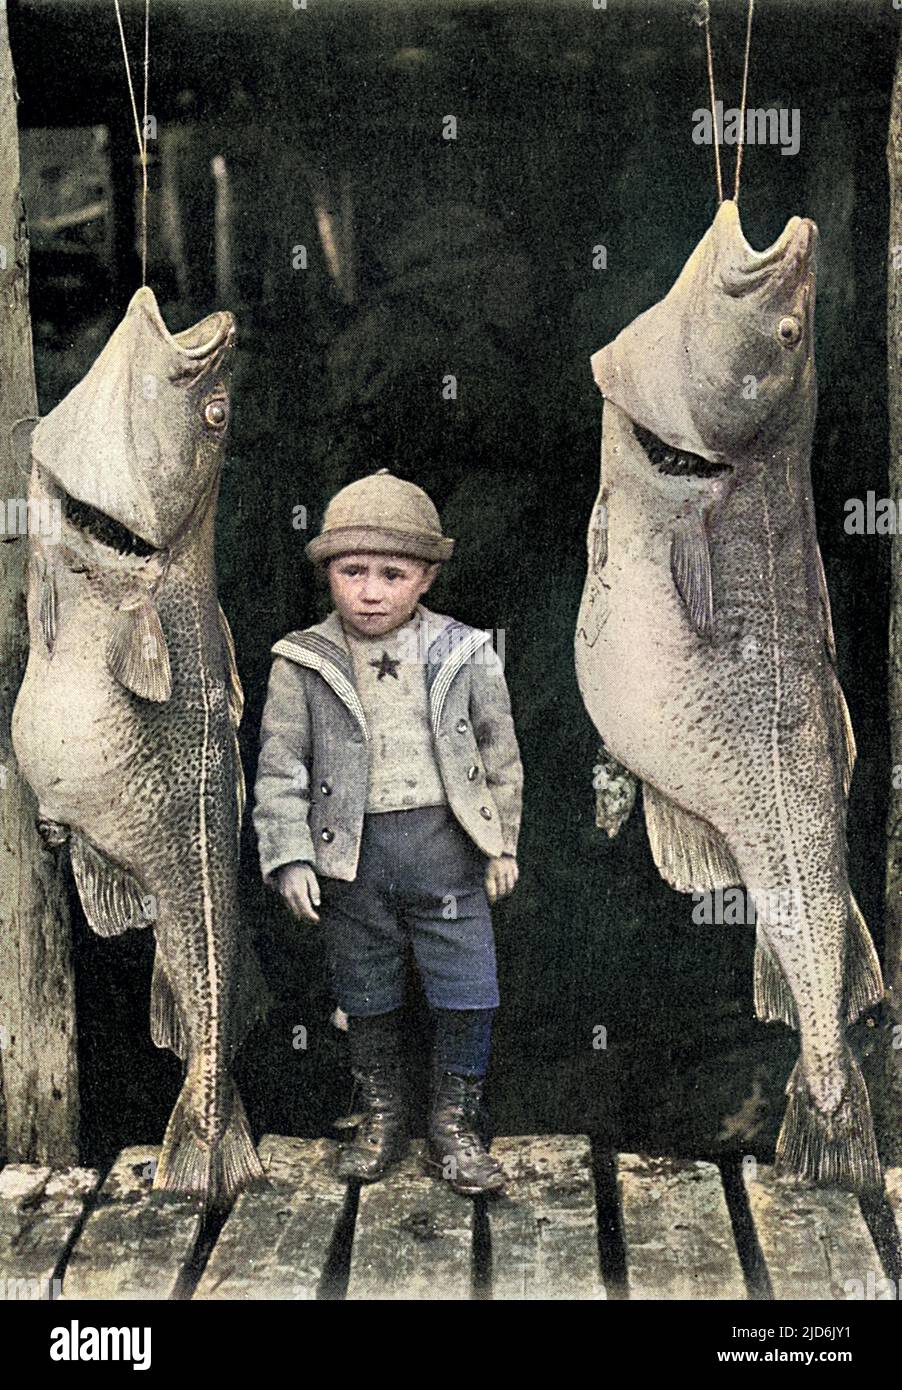 Die Produkte von Neufundland, Kanada ('um nichts von der mittleren zu sagen'). Ein Paar großer Kabeljau flankiert den jungen Fischer. Kolorierte Version von: 10823738 Datum: 1902 Stockfoto